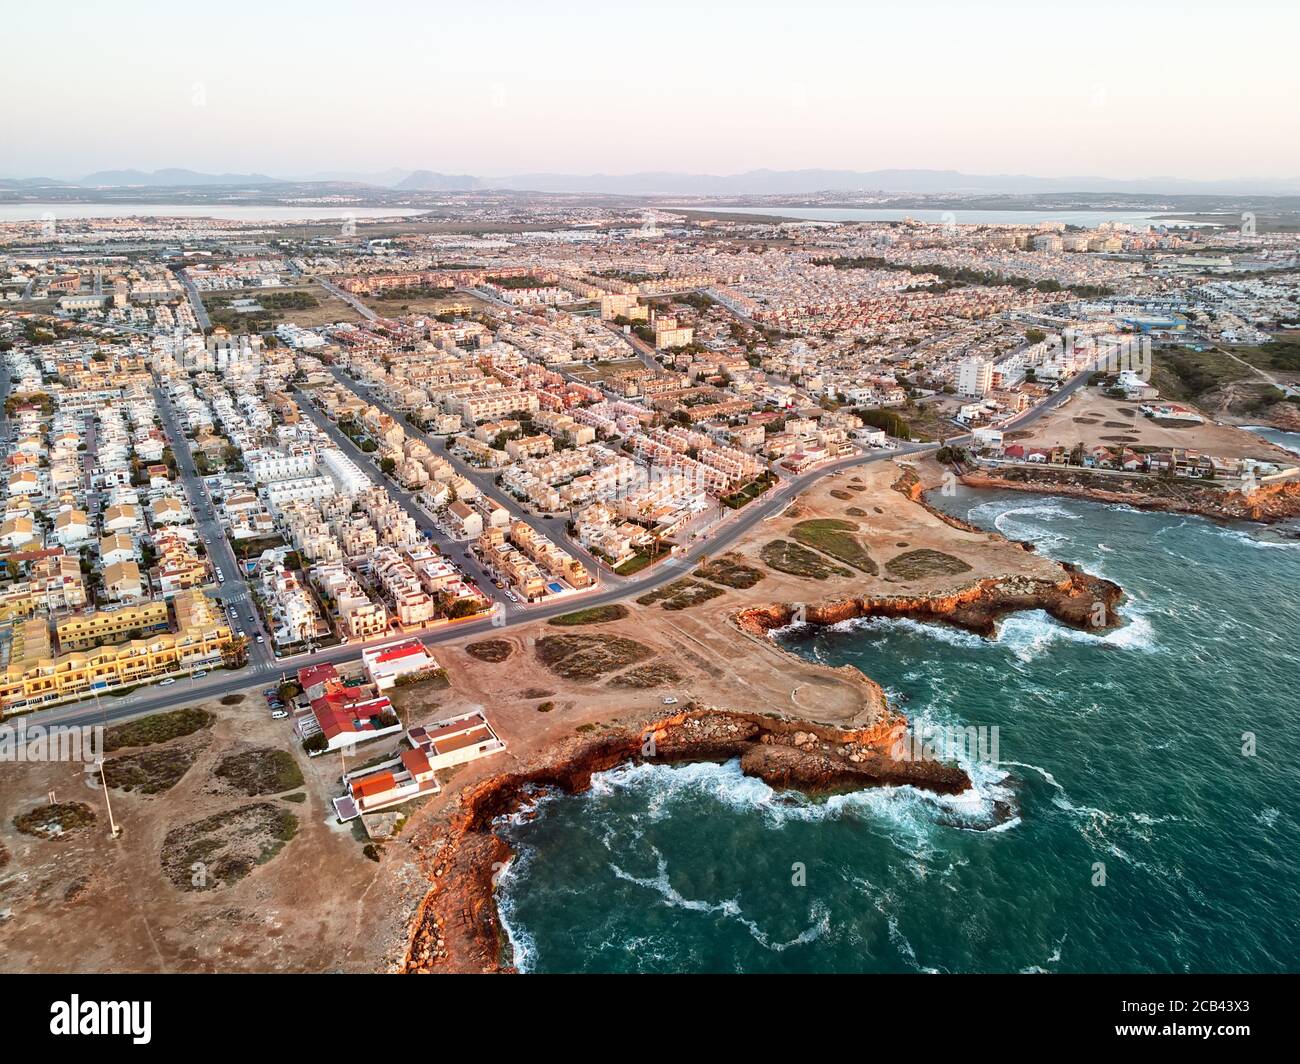 Luftpanoramabo von Torrevieja Stadtbild, felsige Küste Mittelmeer bei Sonnenaufgang, Salzsee oder Las Salinas, Bildansicht von oben. Pro Stockfoto